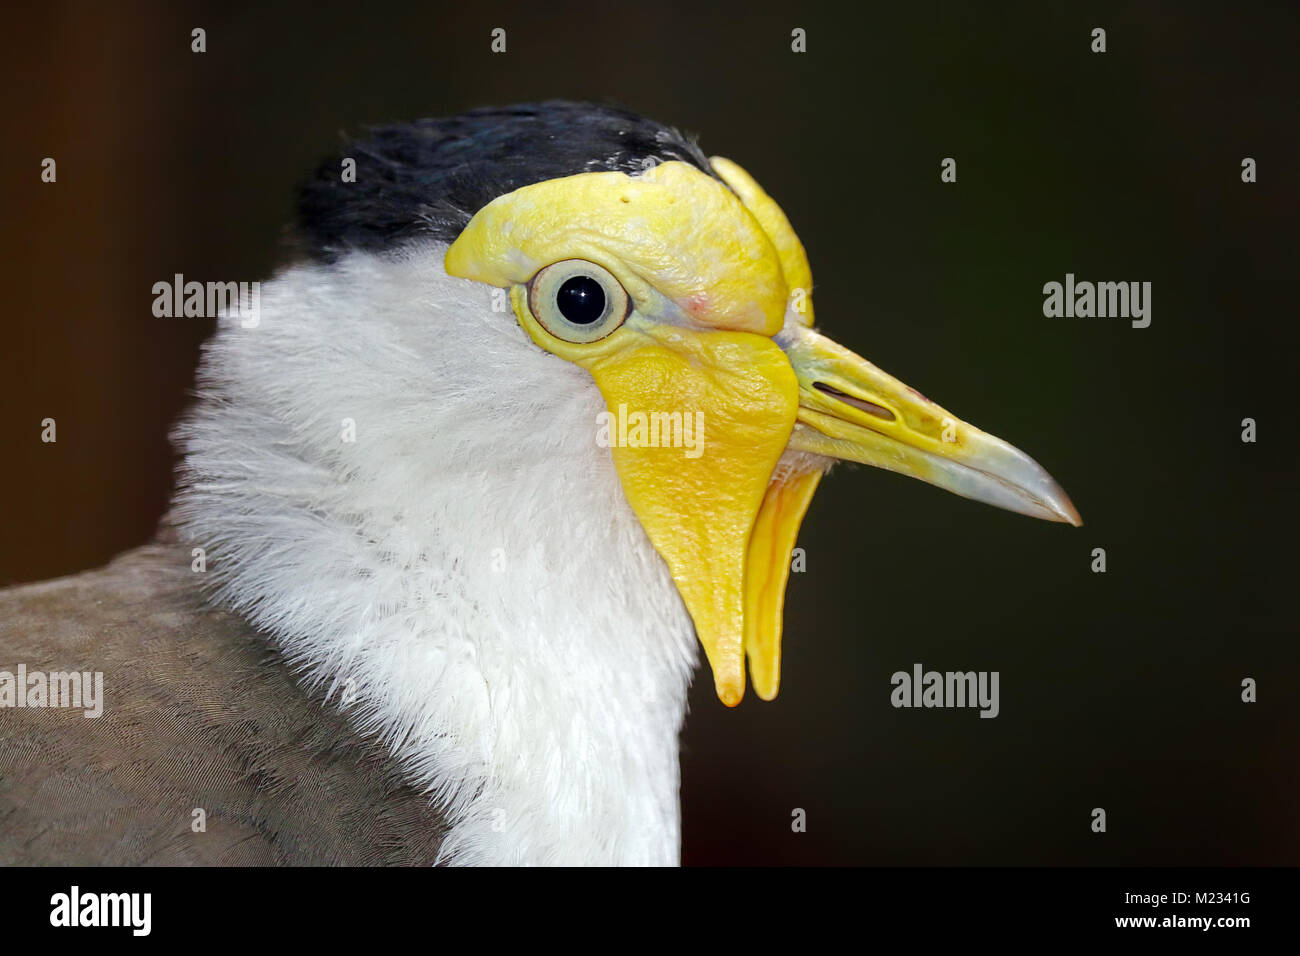 Weird testa di una mascherata pavoncella vanellus (miglia) in vista di profilo Foto Stock